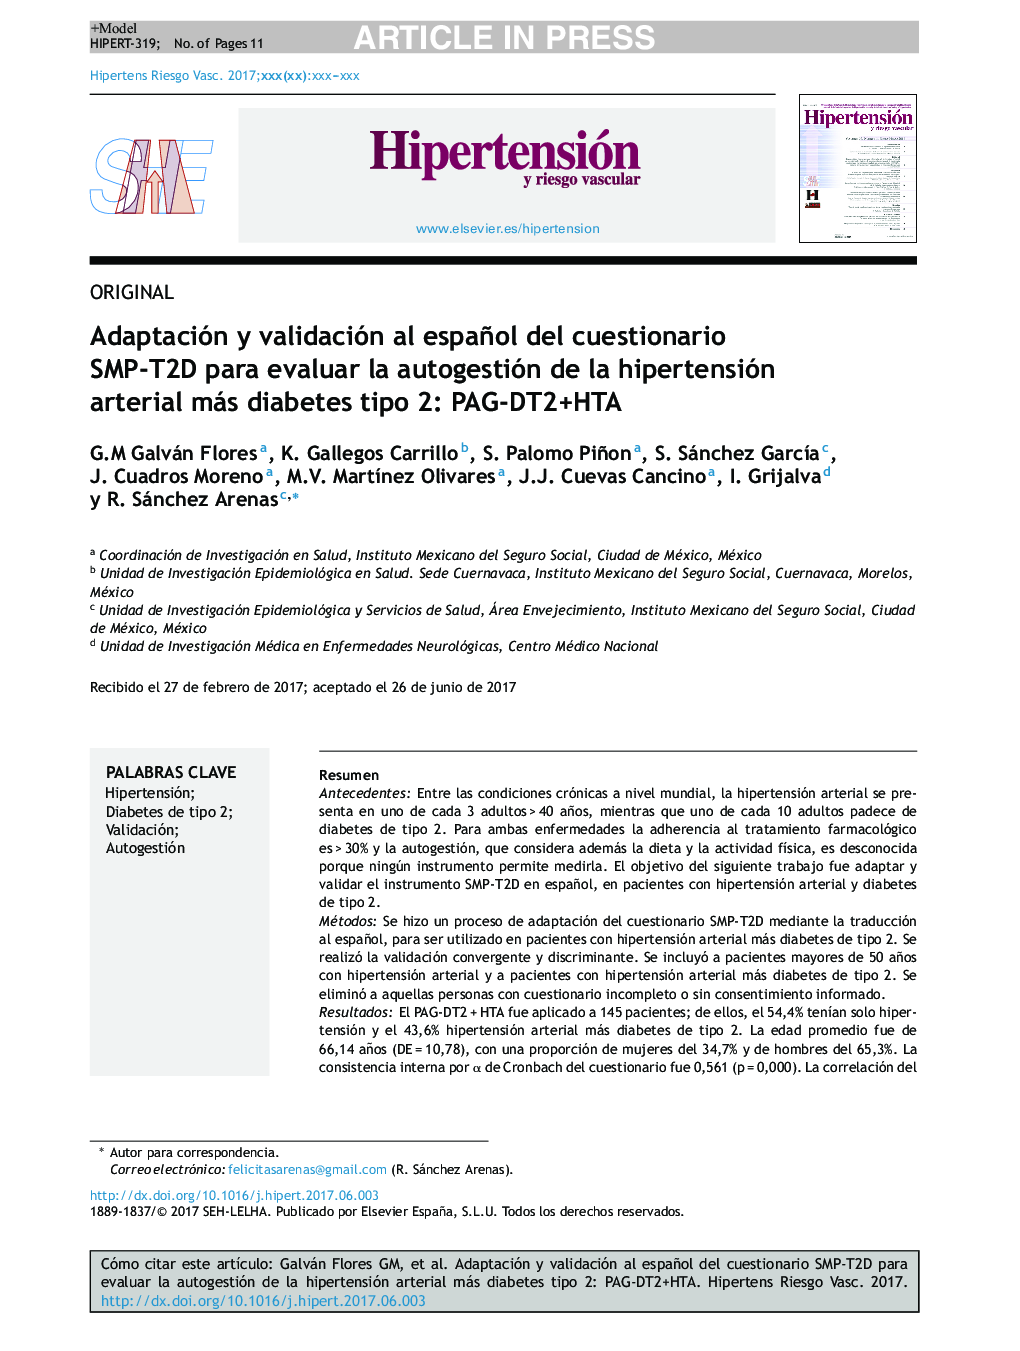 Adaptación y validación al español del cuestionario SMP-T2D para evaluar la autogestión de la hipertensión arterial más diabetes tipo 2: PAG-DT2+HTA